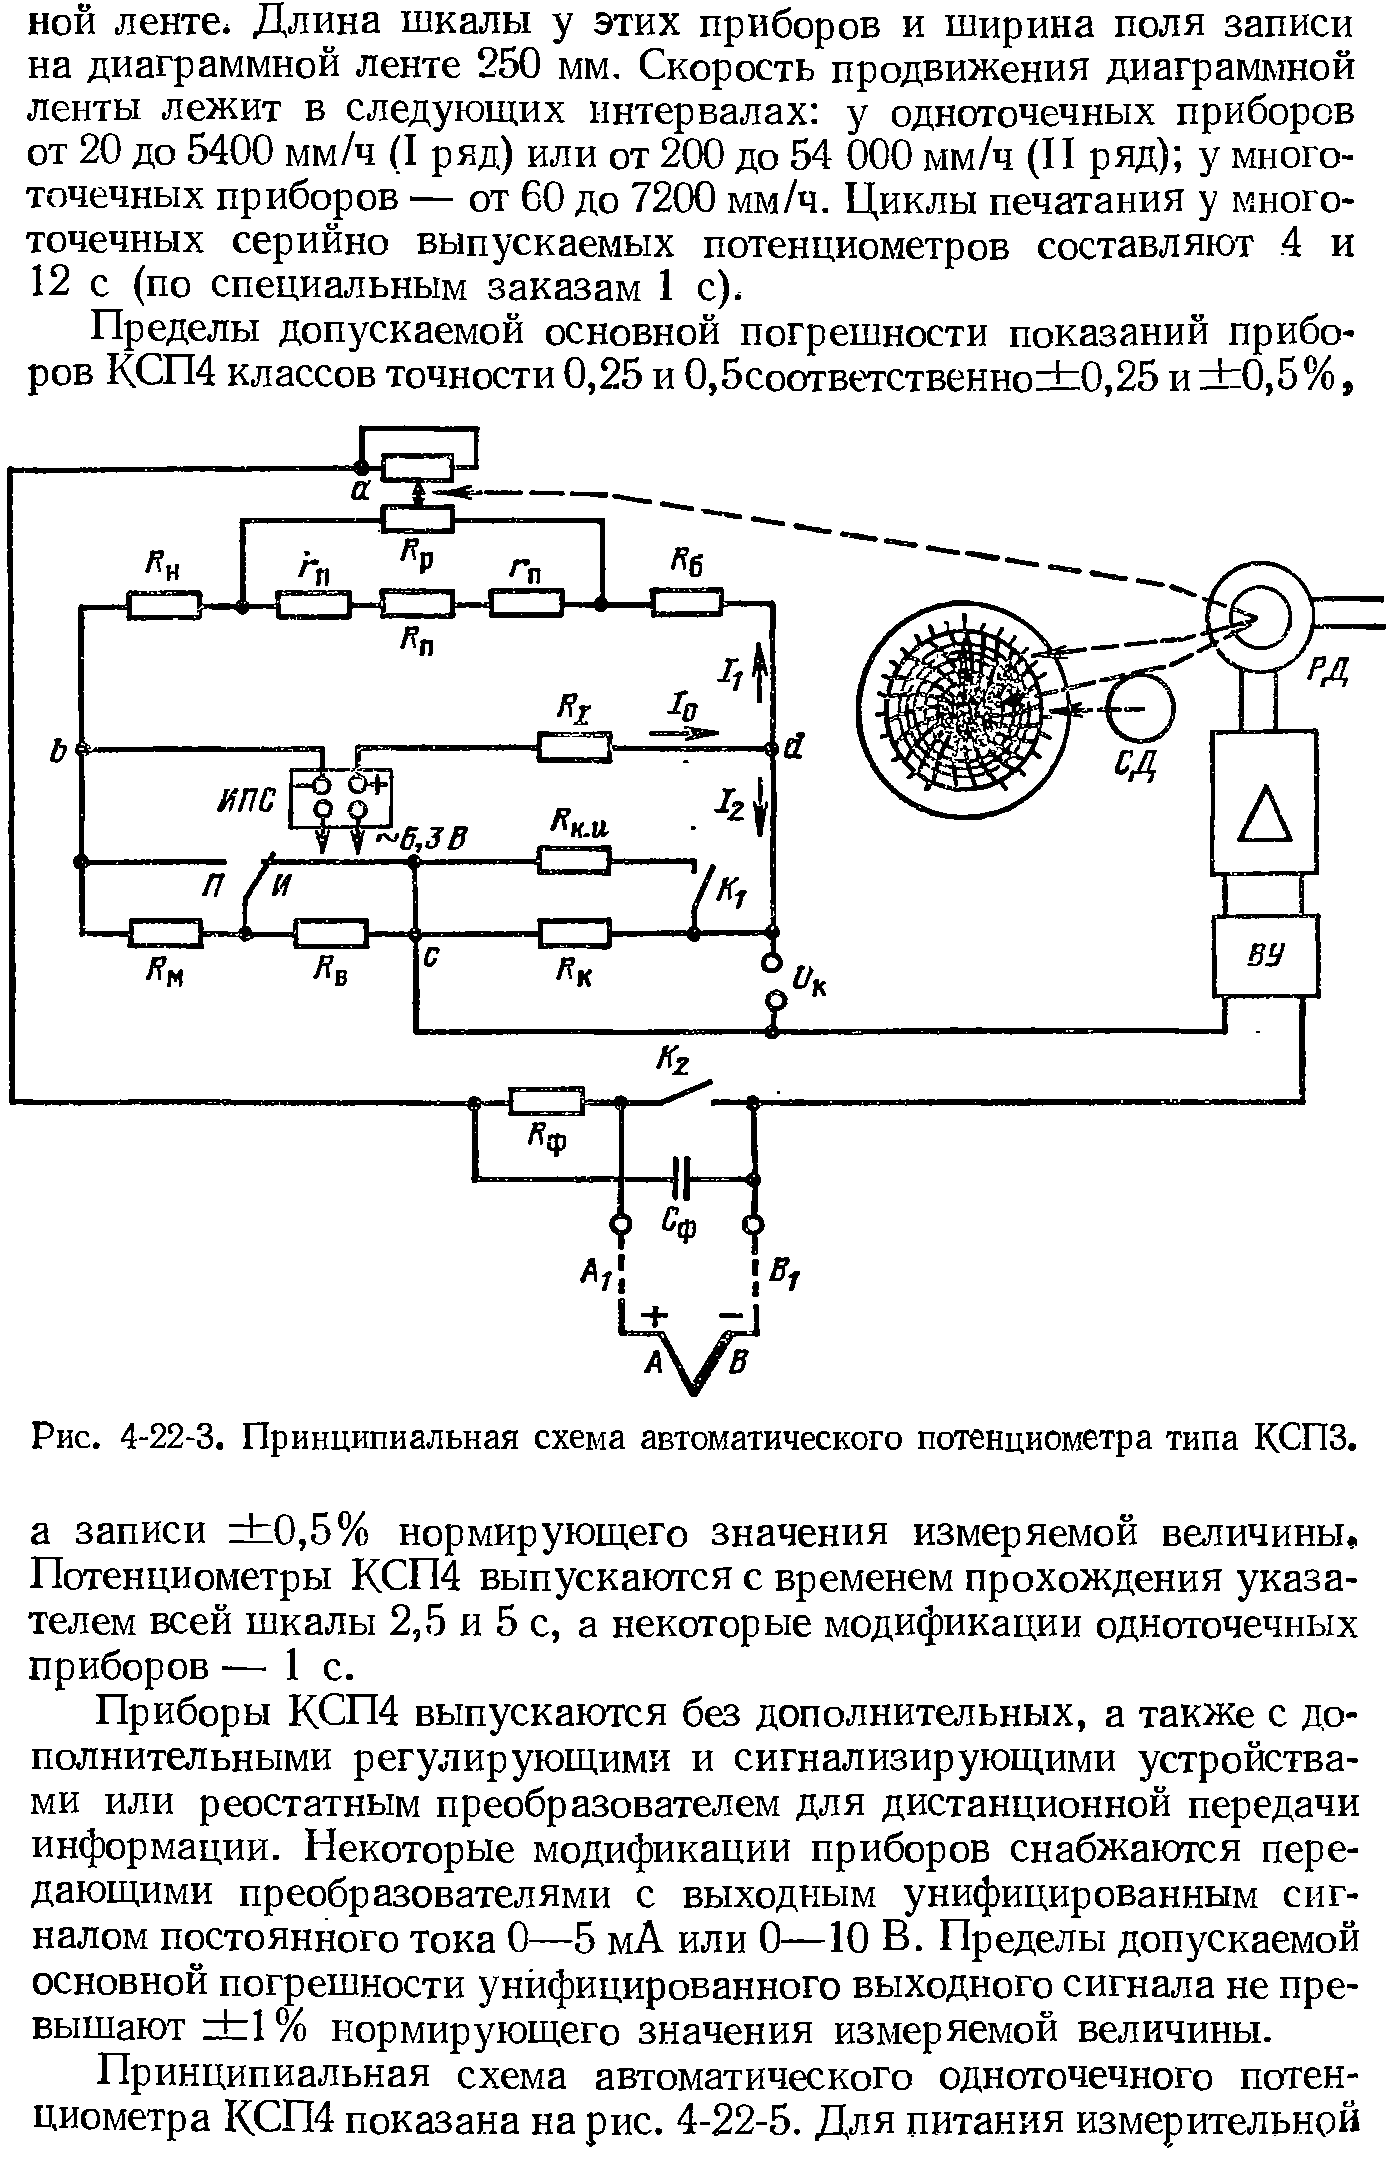 Рис. 4-22-3. Принципиальная схема автоматического потенциометра типа КСПЗ.
